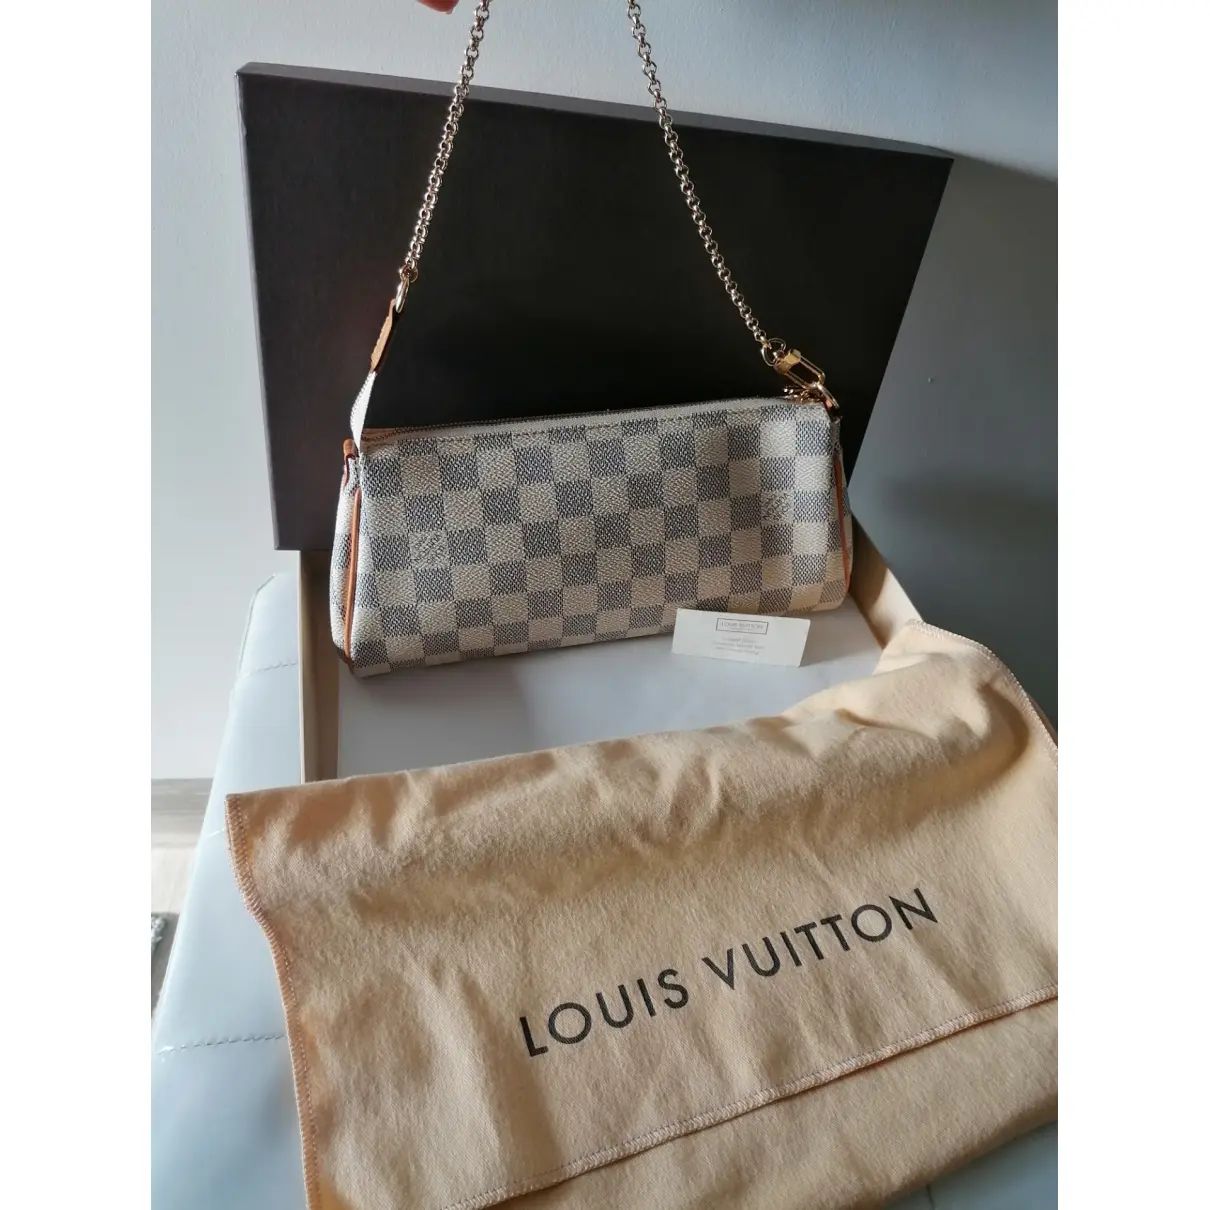 Buy Louis Vuitton Eva cloth clutch bag online